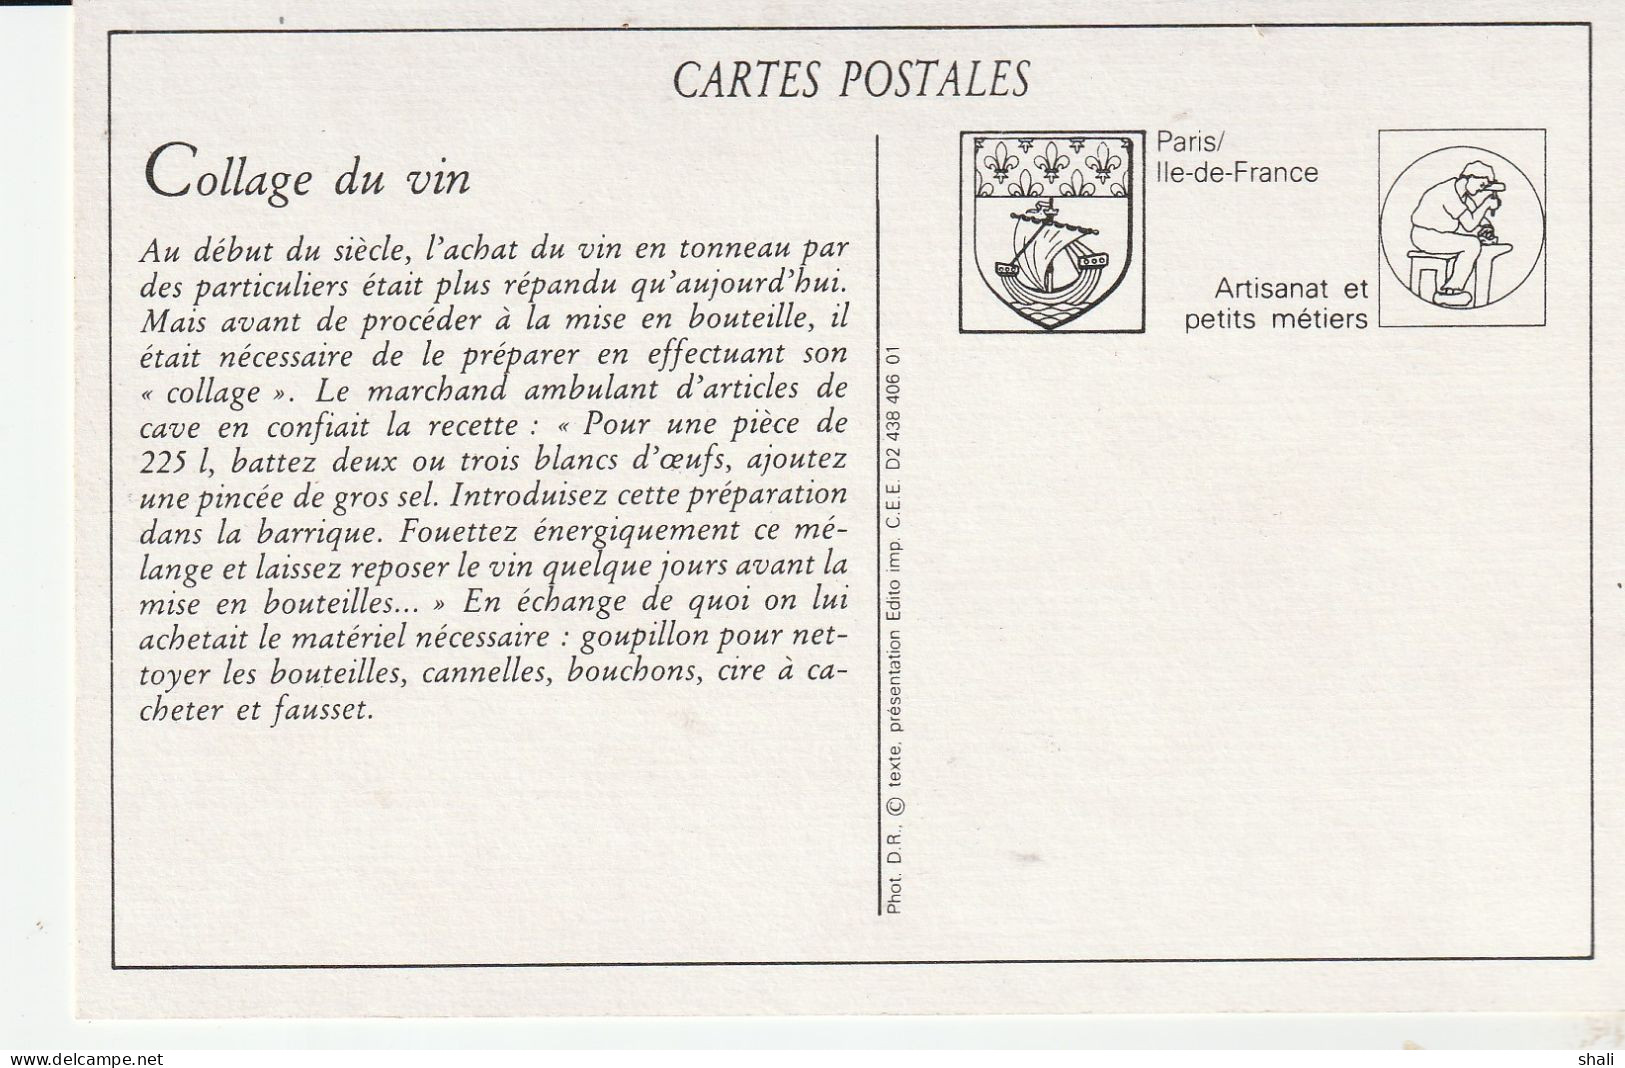 COPIE DE CARTE POSTALE ANCIENNE MARCHANDS D' ARTICLES DE CAVES - Marchands Ambulants